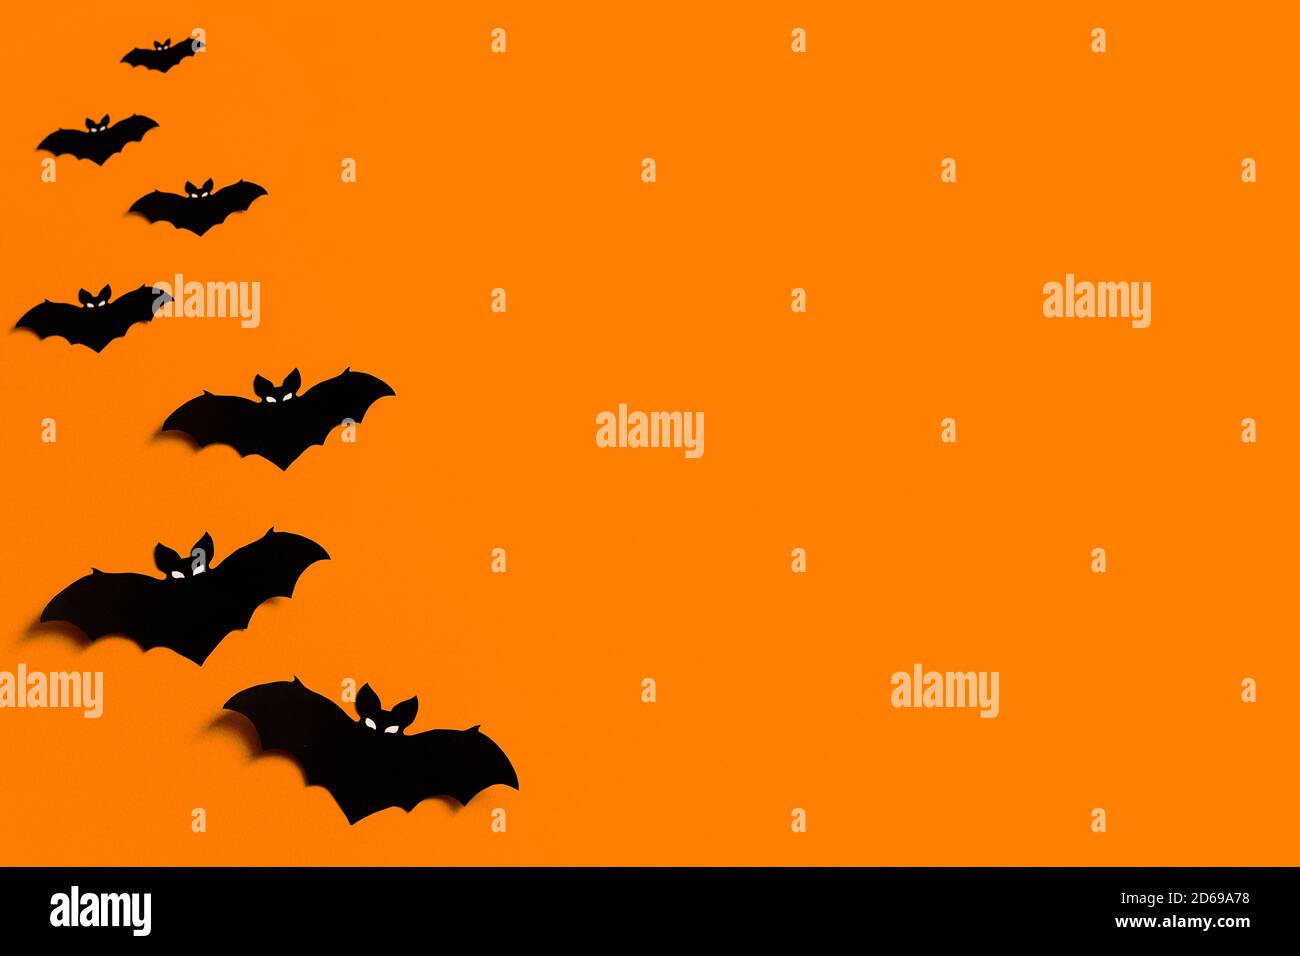 Fond orange avec un troupeau de chauves-souris en papier noir pour Halloween, silhouettes en papier noir sur fond orange, Halloween concept, copyspace Banque D'Images